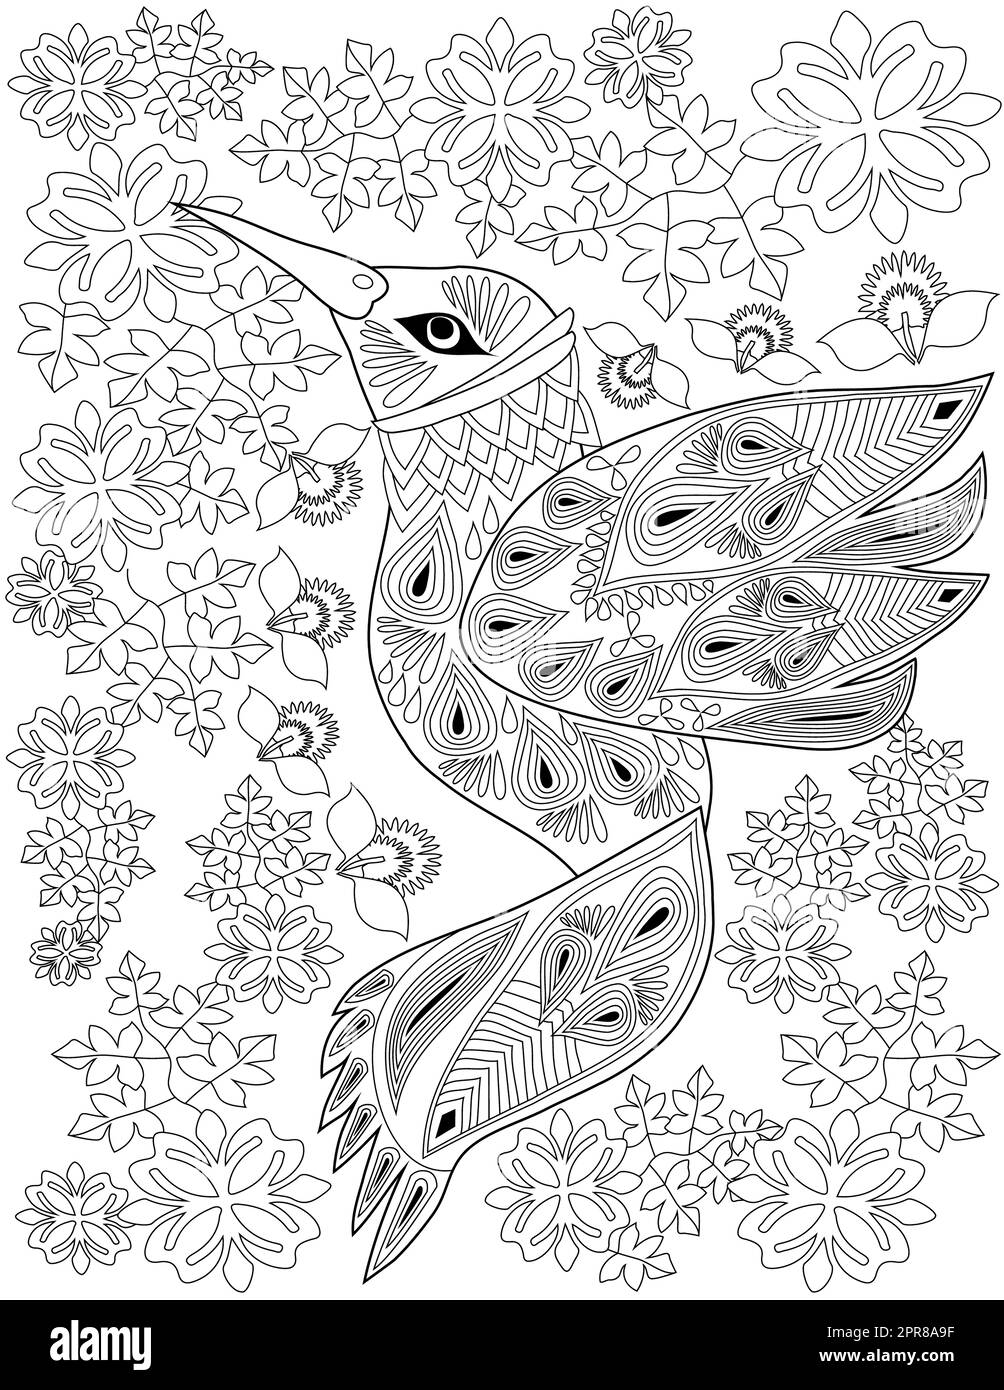 Libro para Colorear de Hermosos Pájaros por Números para Adultos:  Increíbles Páginas de una Sola Cara para Colorear con Pájaros, Mariposas,  Flores